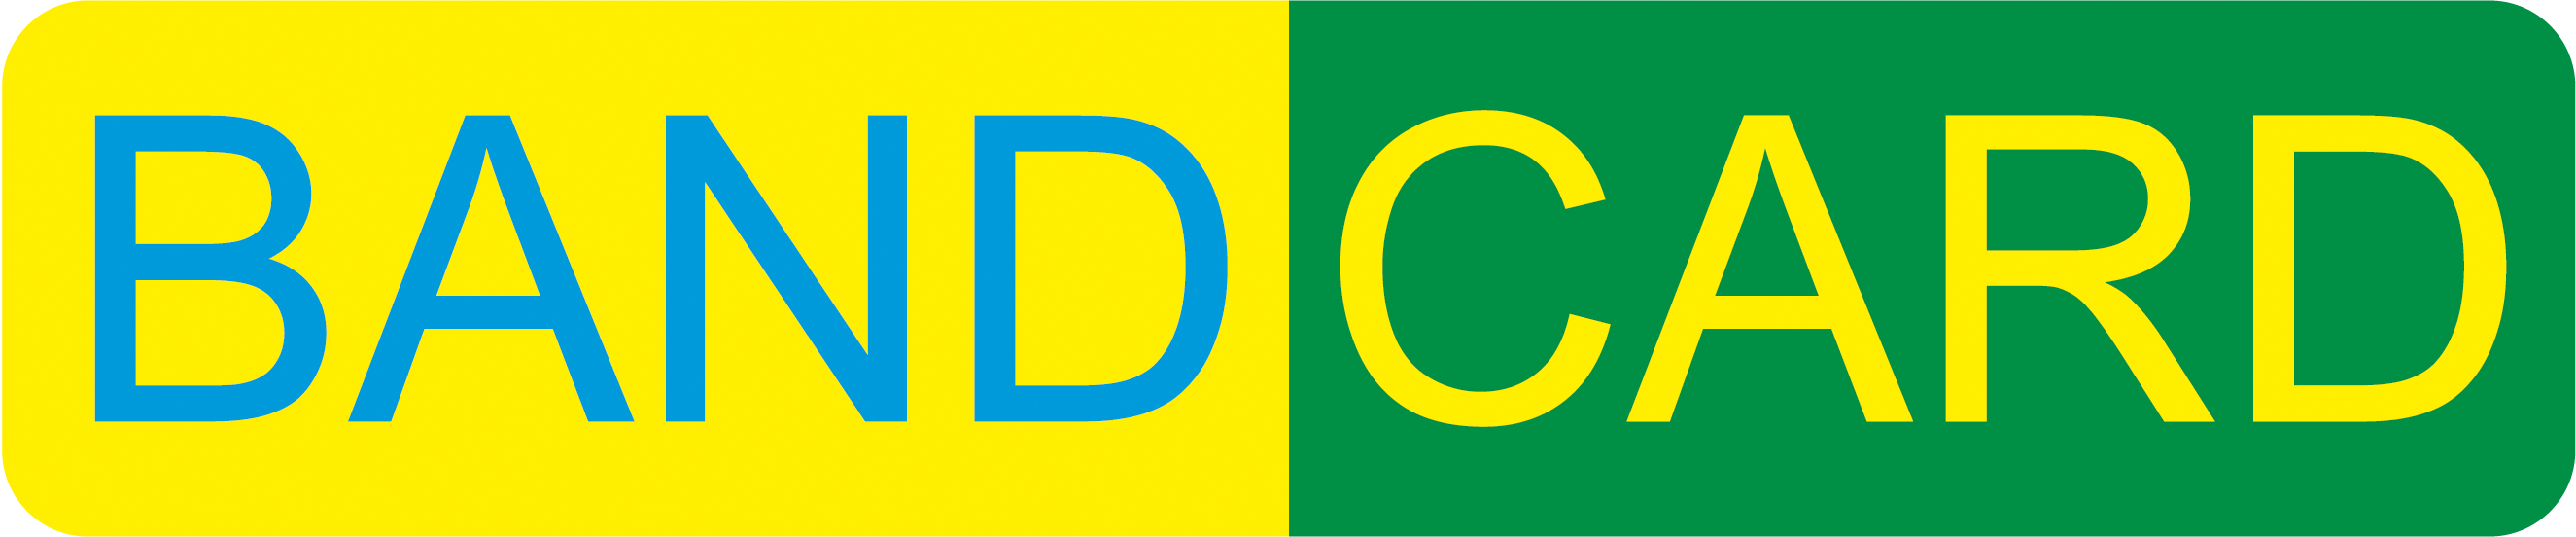 Logotipo escrito Bandcard em verde e amarelo